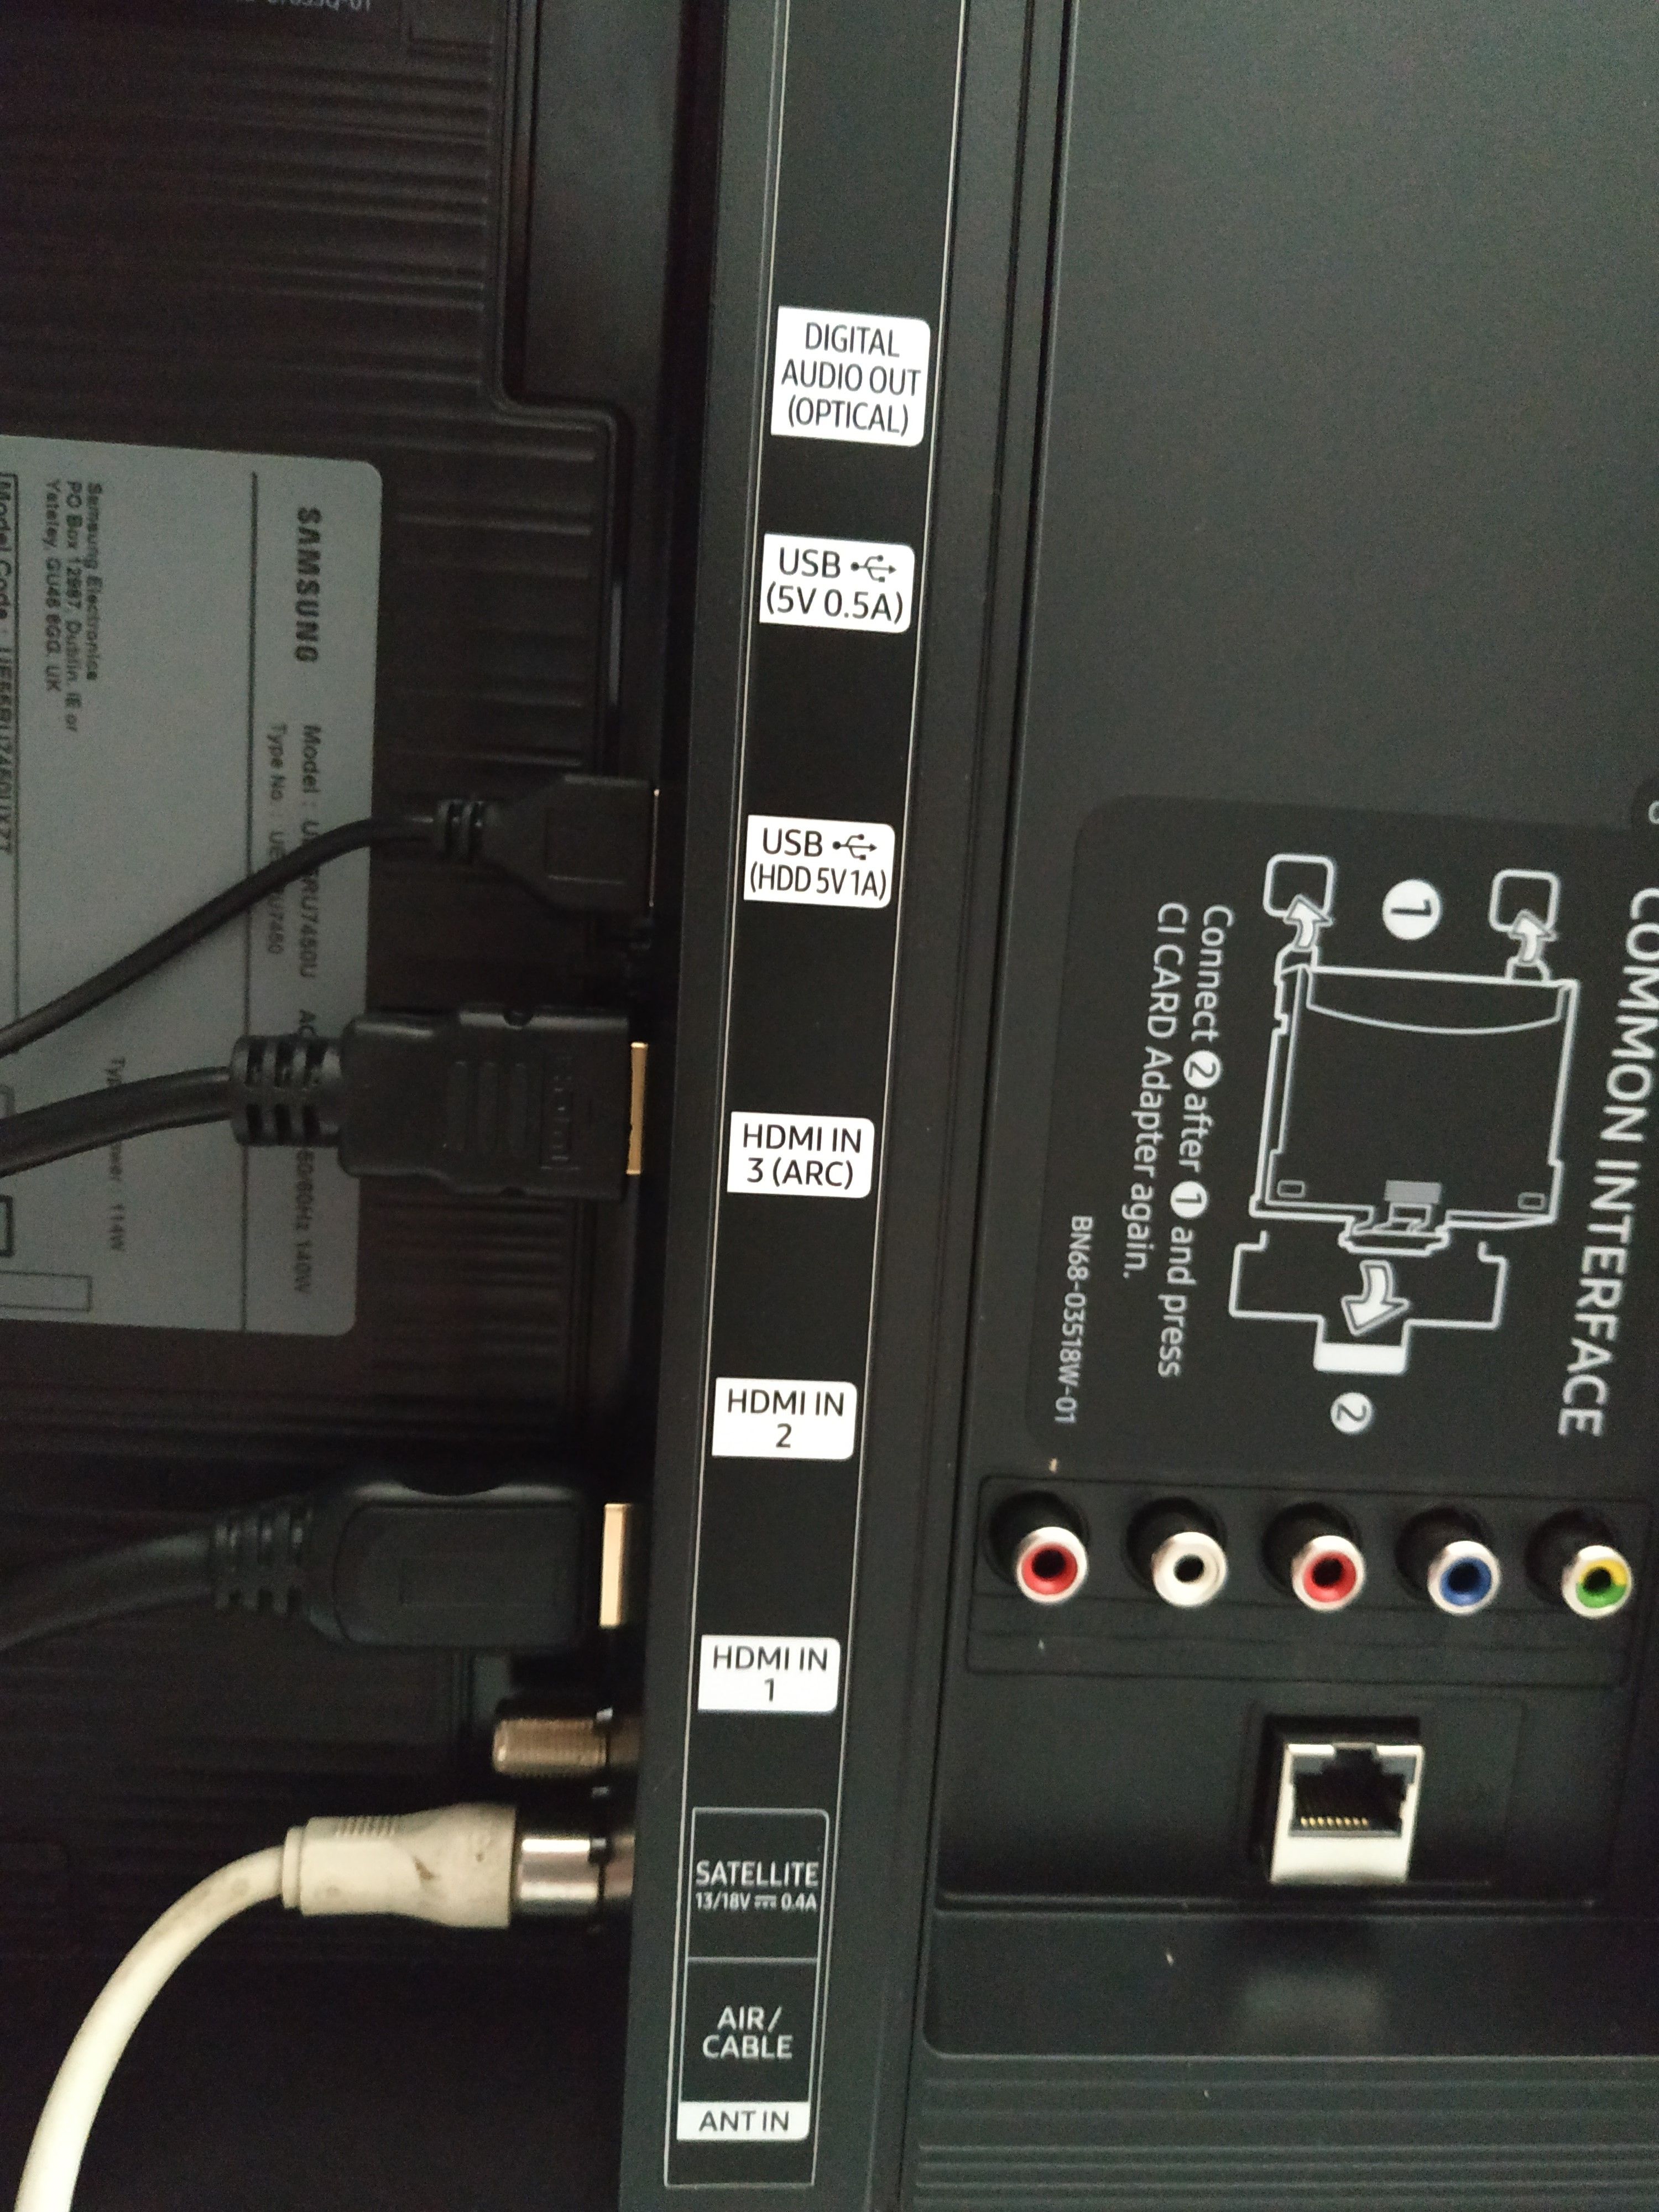 porte HDMI in uscita per UE55RU7450UXZT ? - Samsung Community